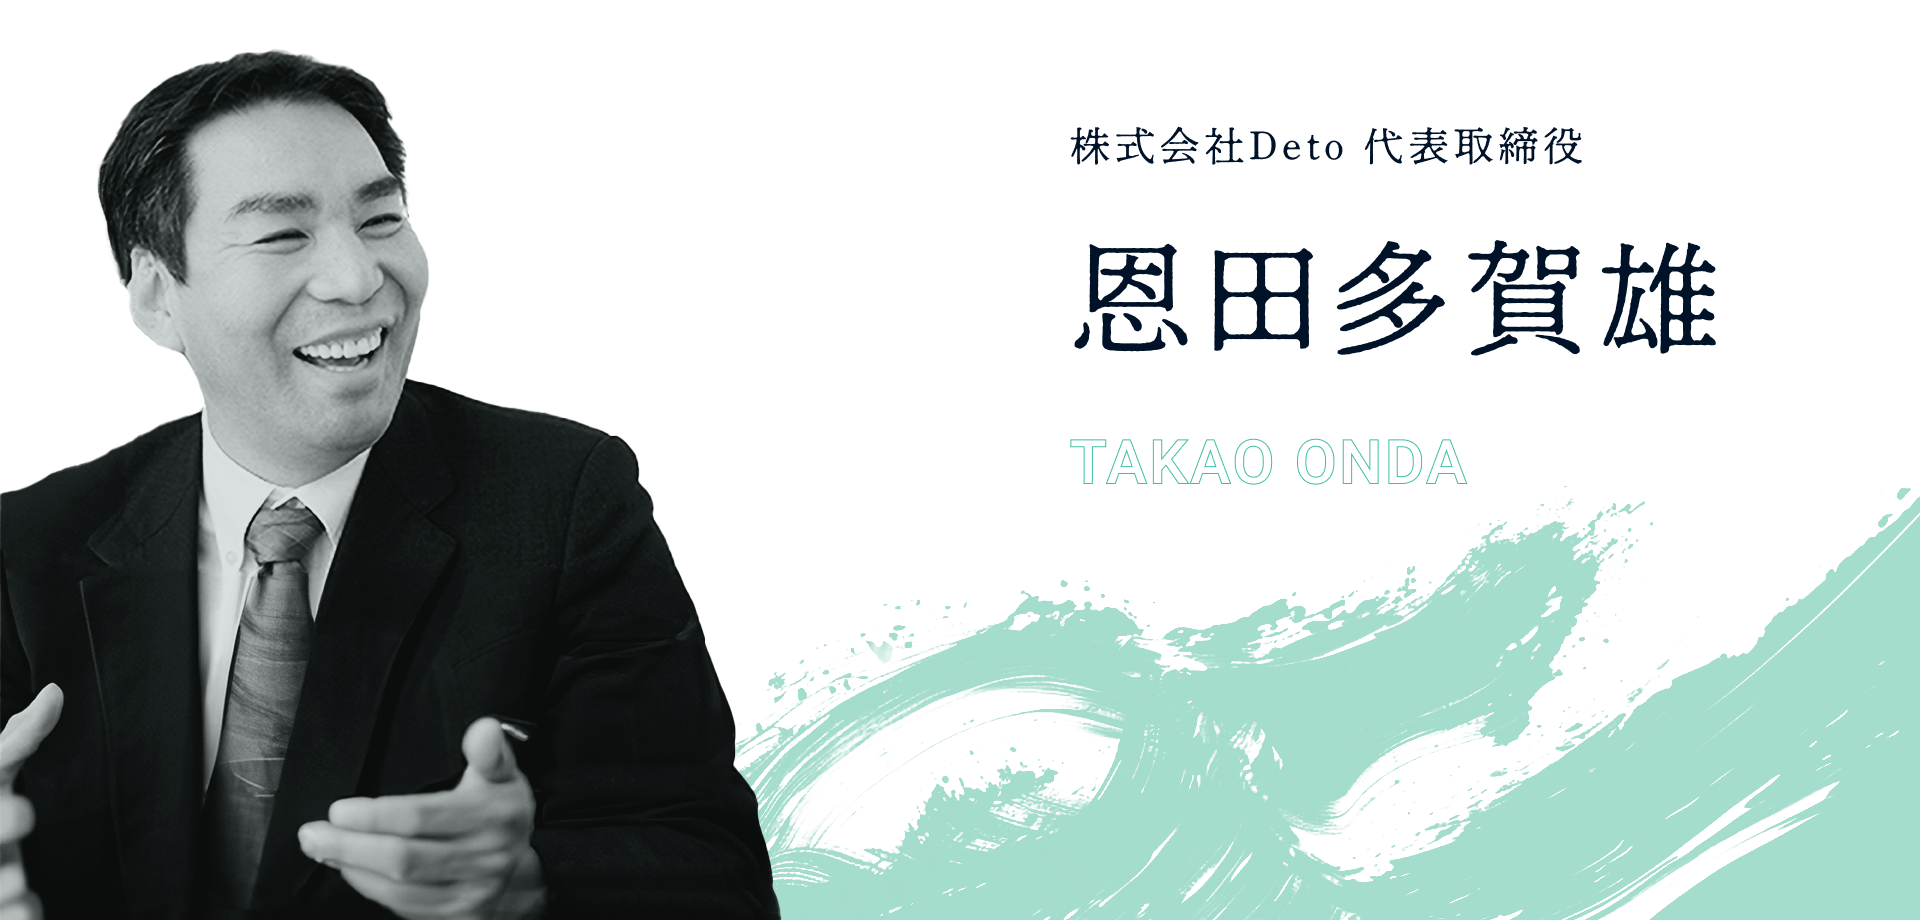 恩田多賀雄 (TAKAO ONDA)株式会社Deto 代表取締役